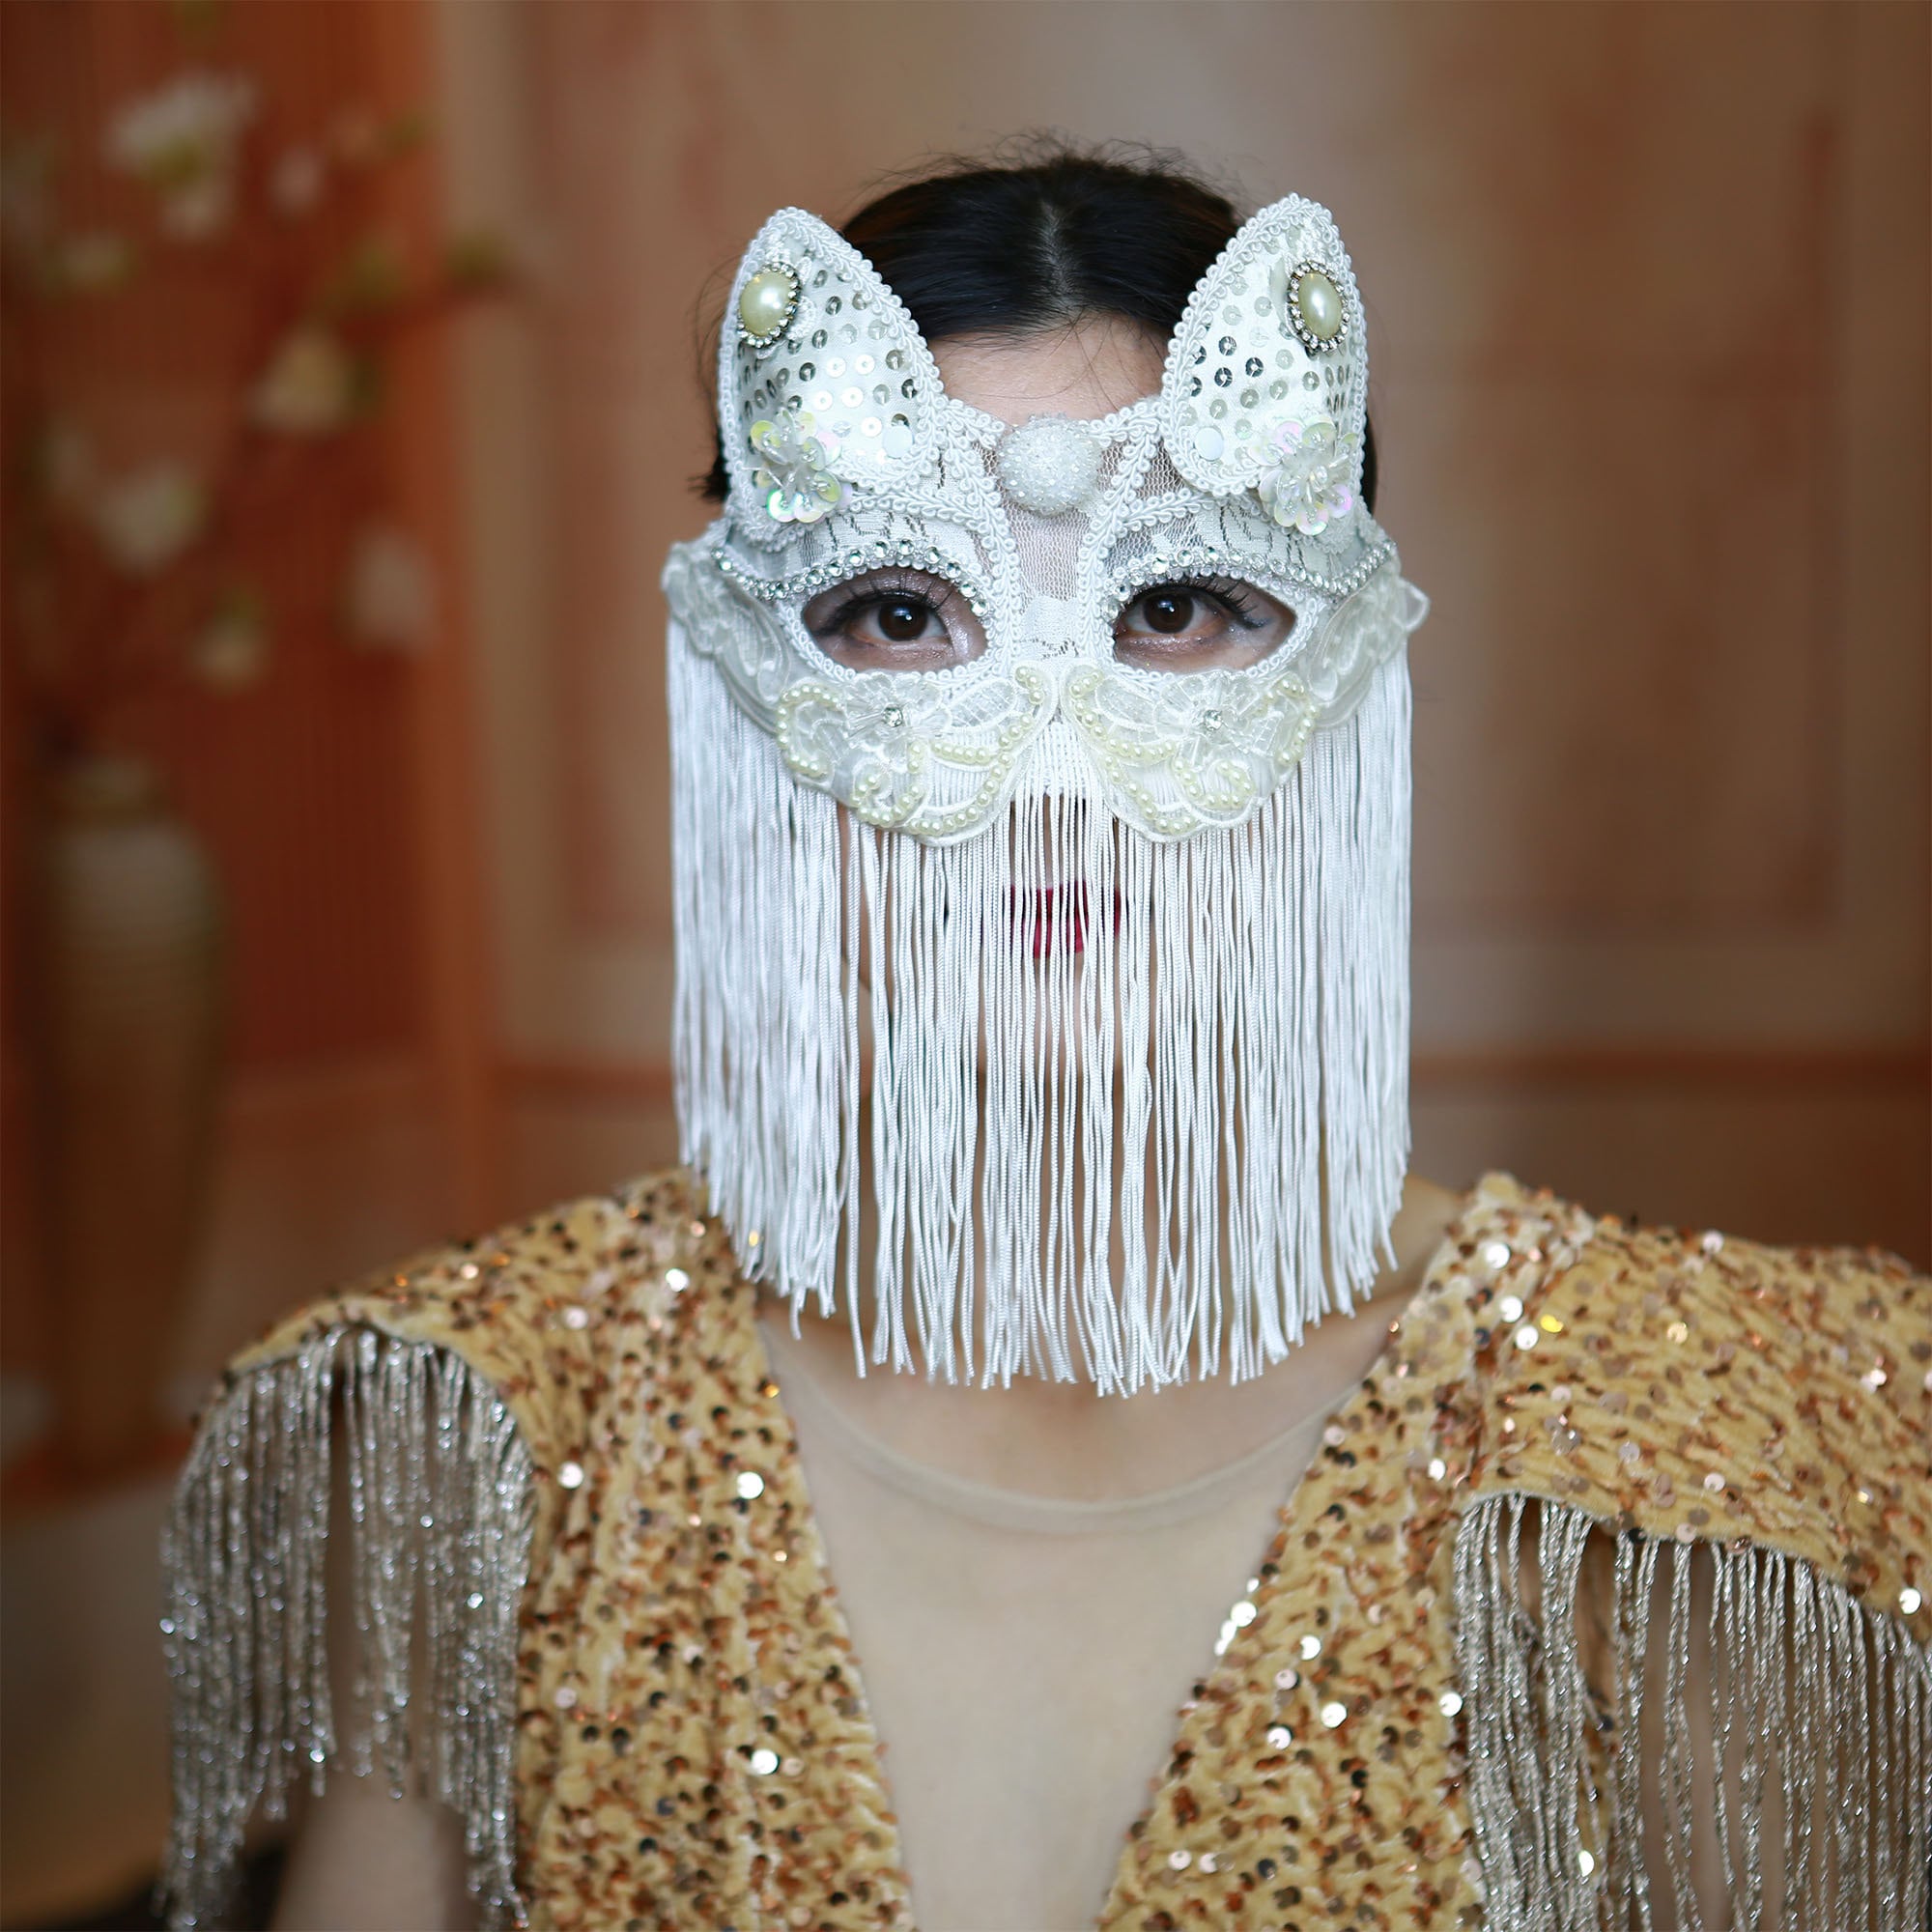 Acheter Masques faciaux complets bricolage couverture faciale Unique masque  Cosplay Couple